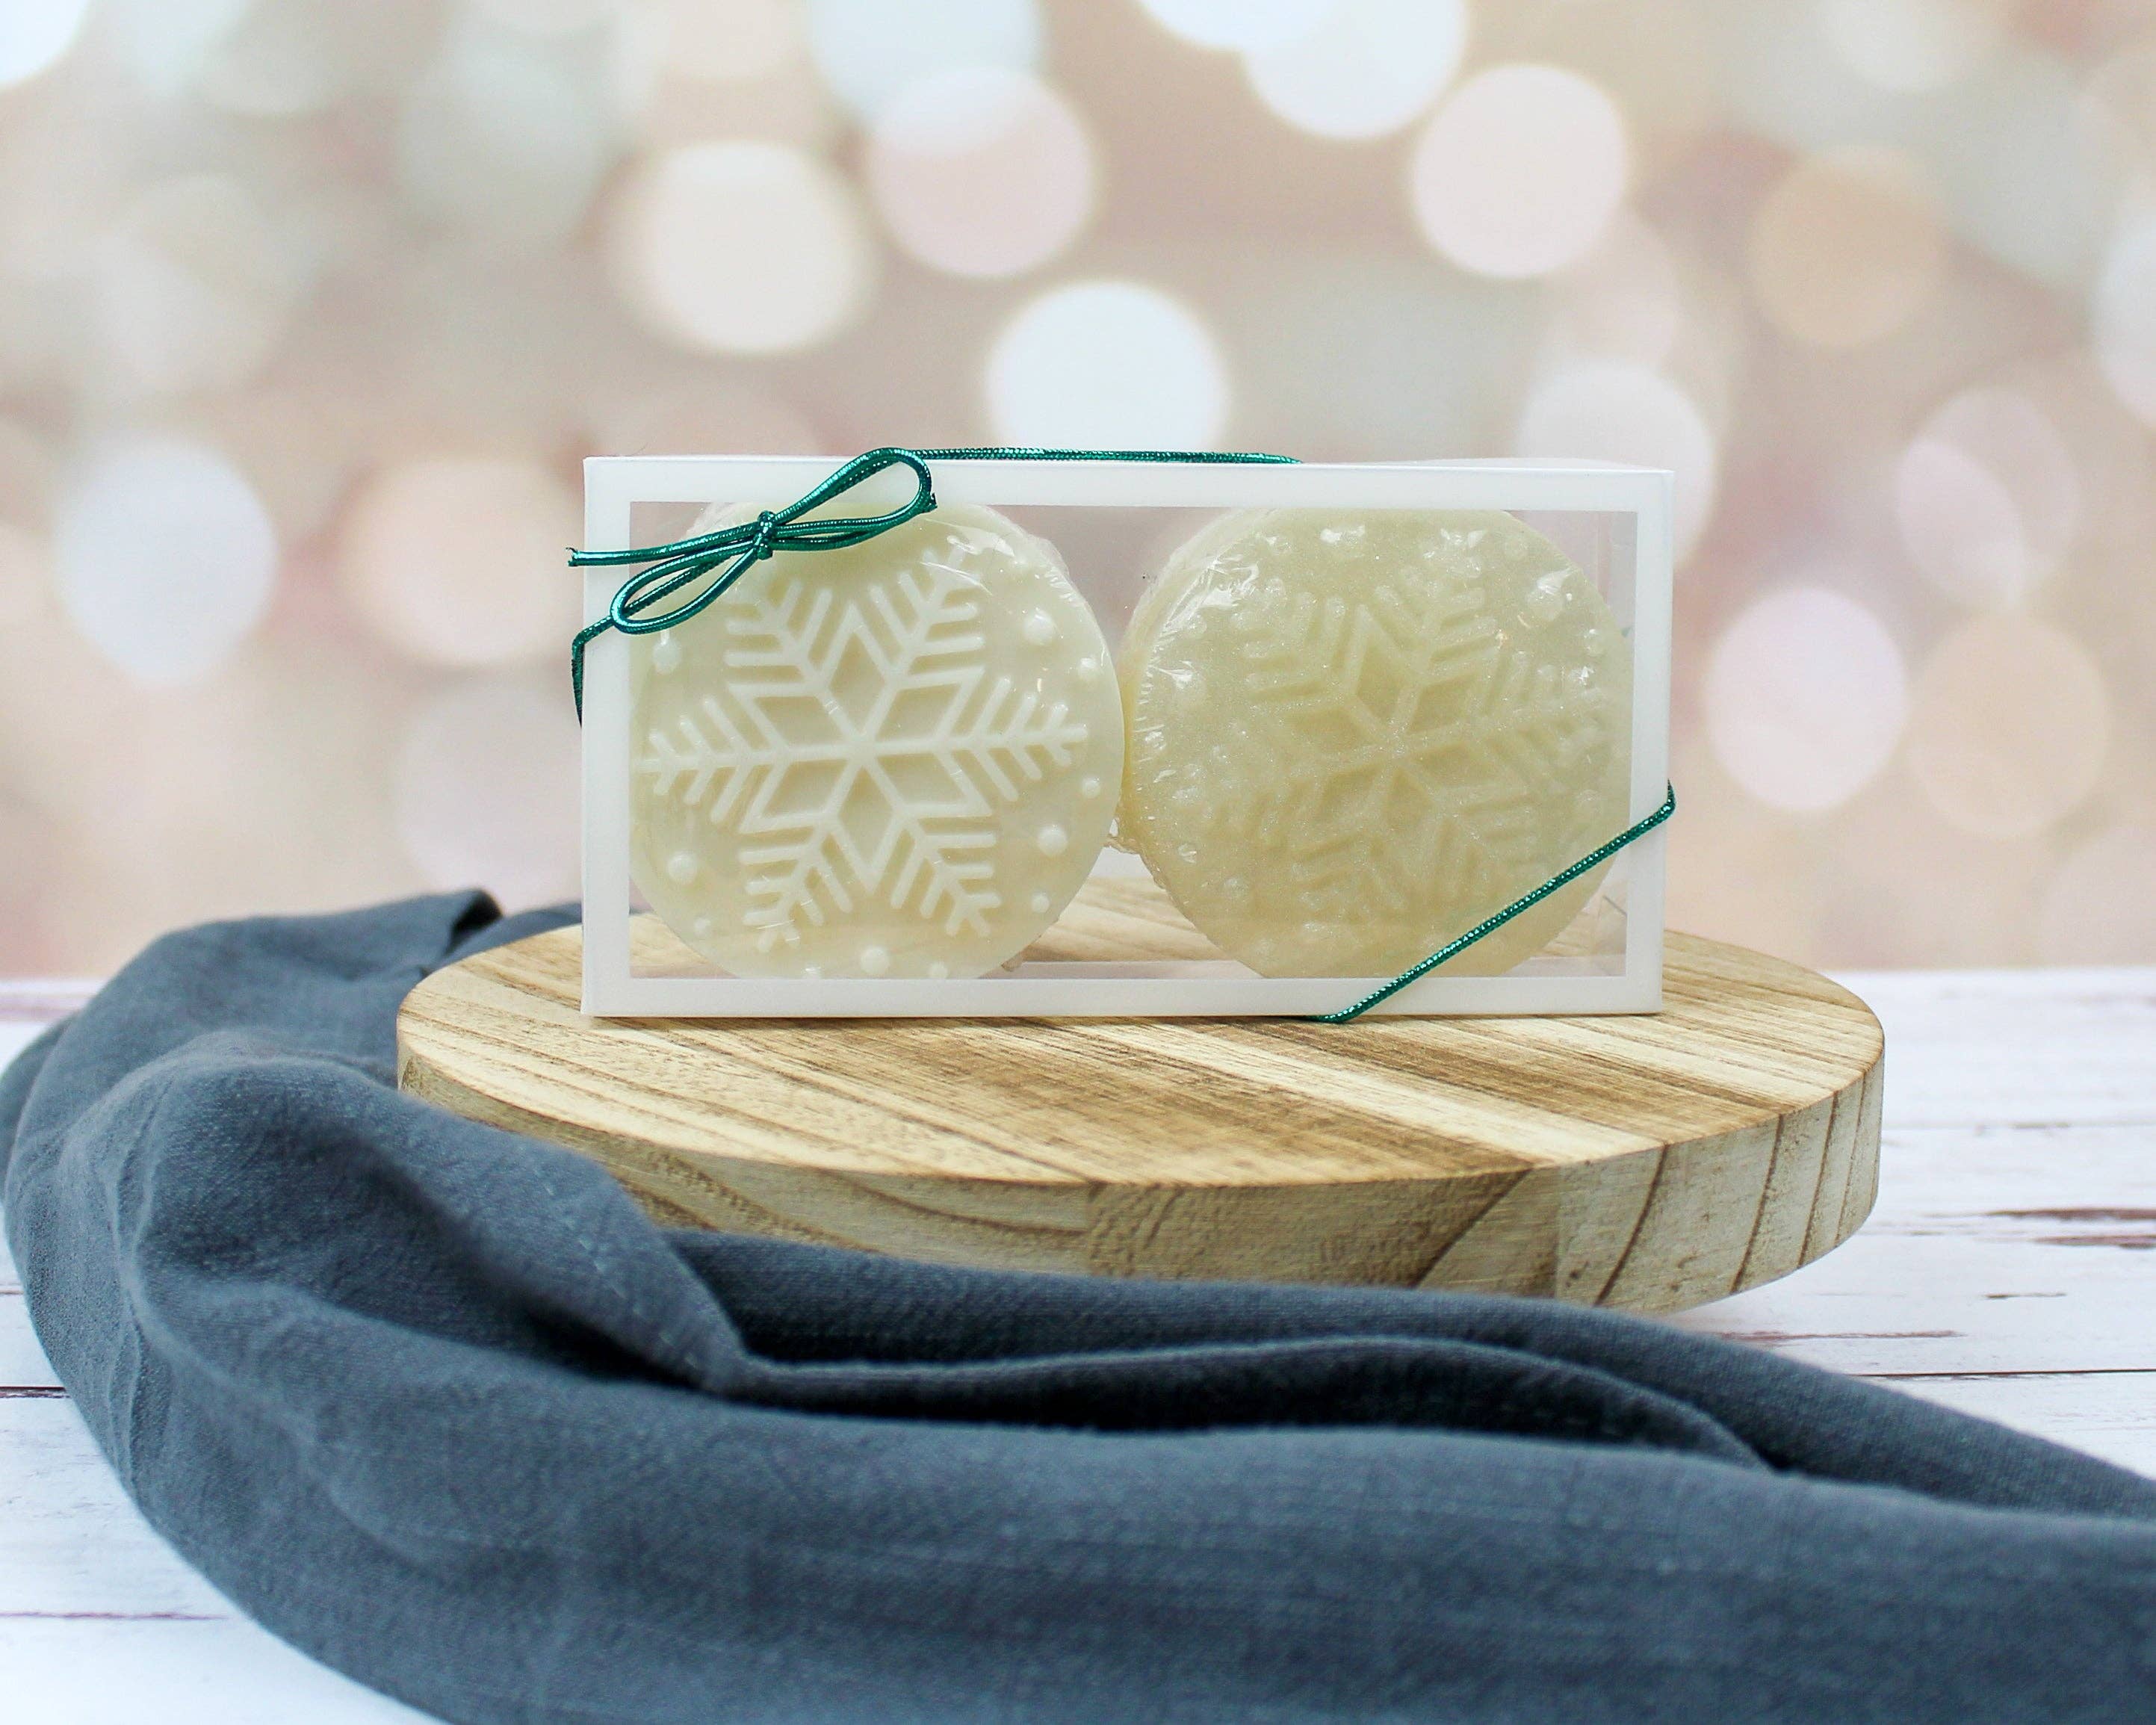 Snowflake Bars Soap Making Kit 1 Kit